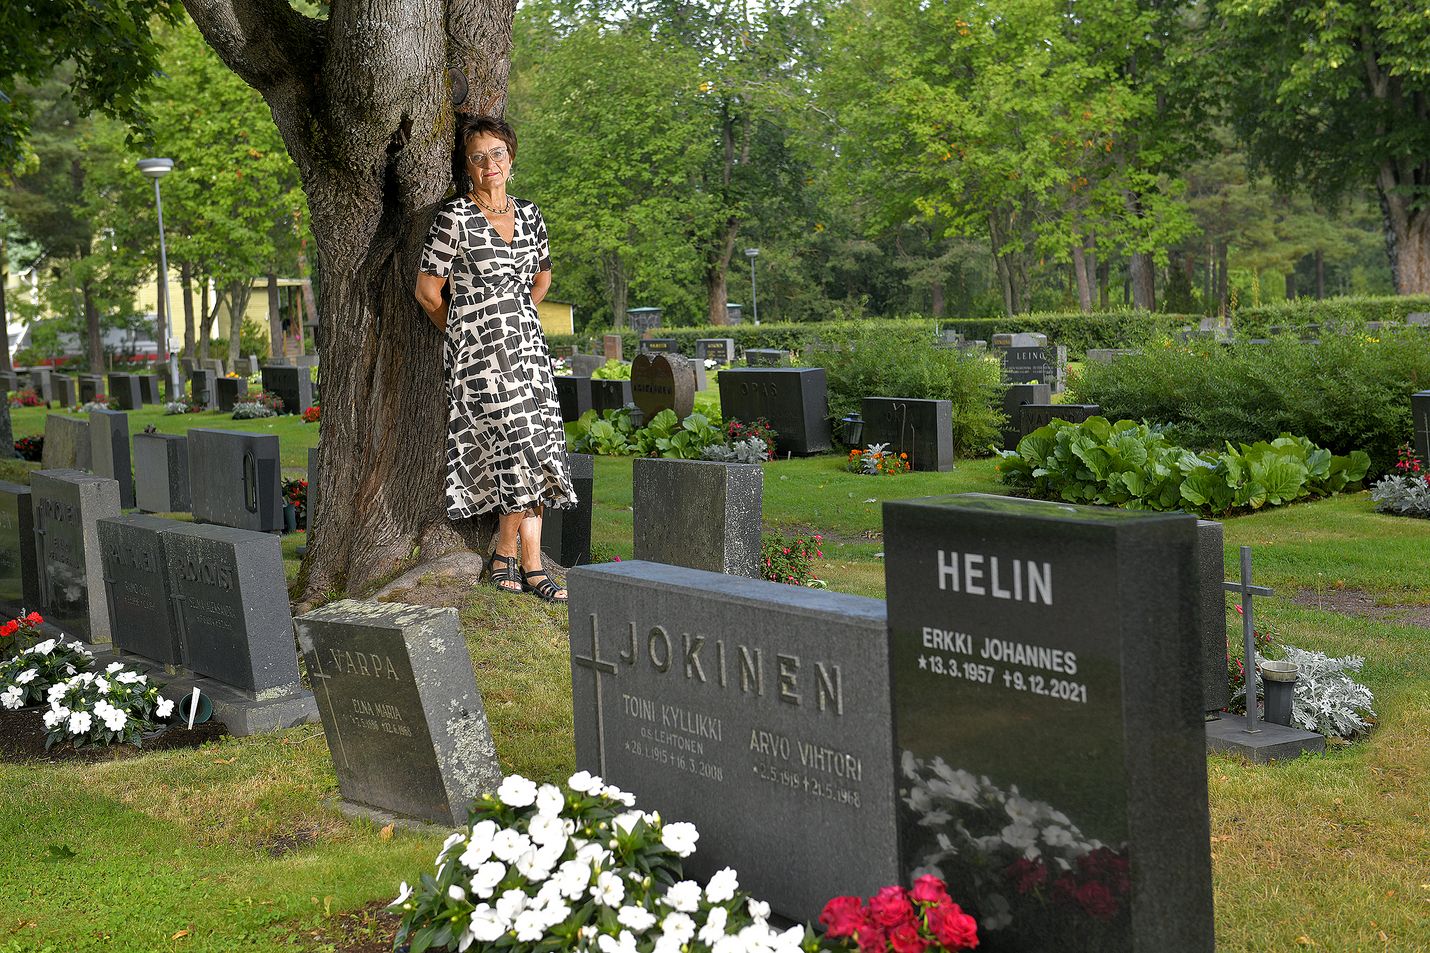 Satu Helinin yksi tärkeimmistä paikoista Raumalla on Monnan hautausmaan, jonne hänen miehensä Erkki on haudattu. He ehtivät olla tiivis parivaljakko yli 40 vuoden ajan. 